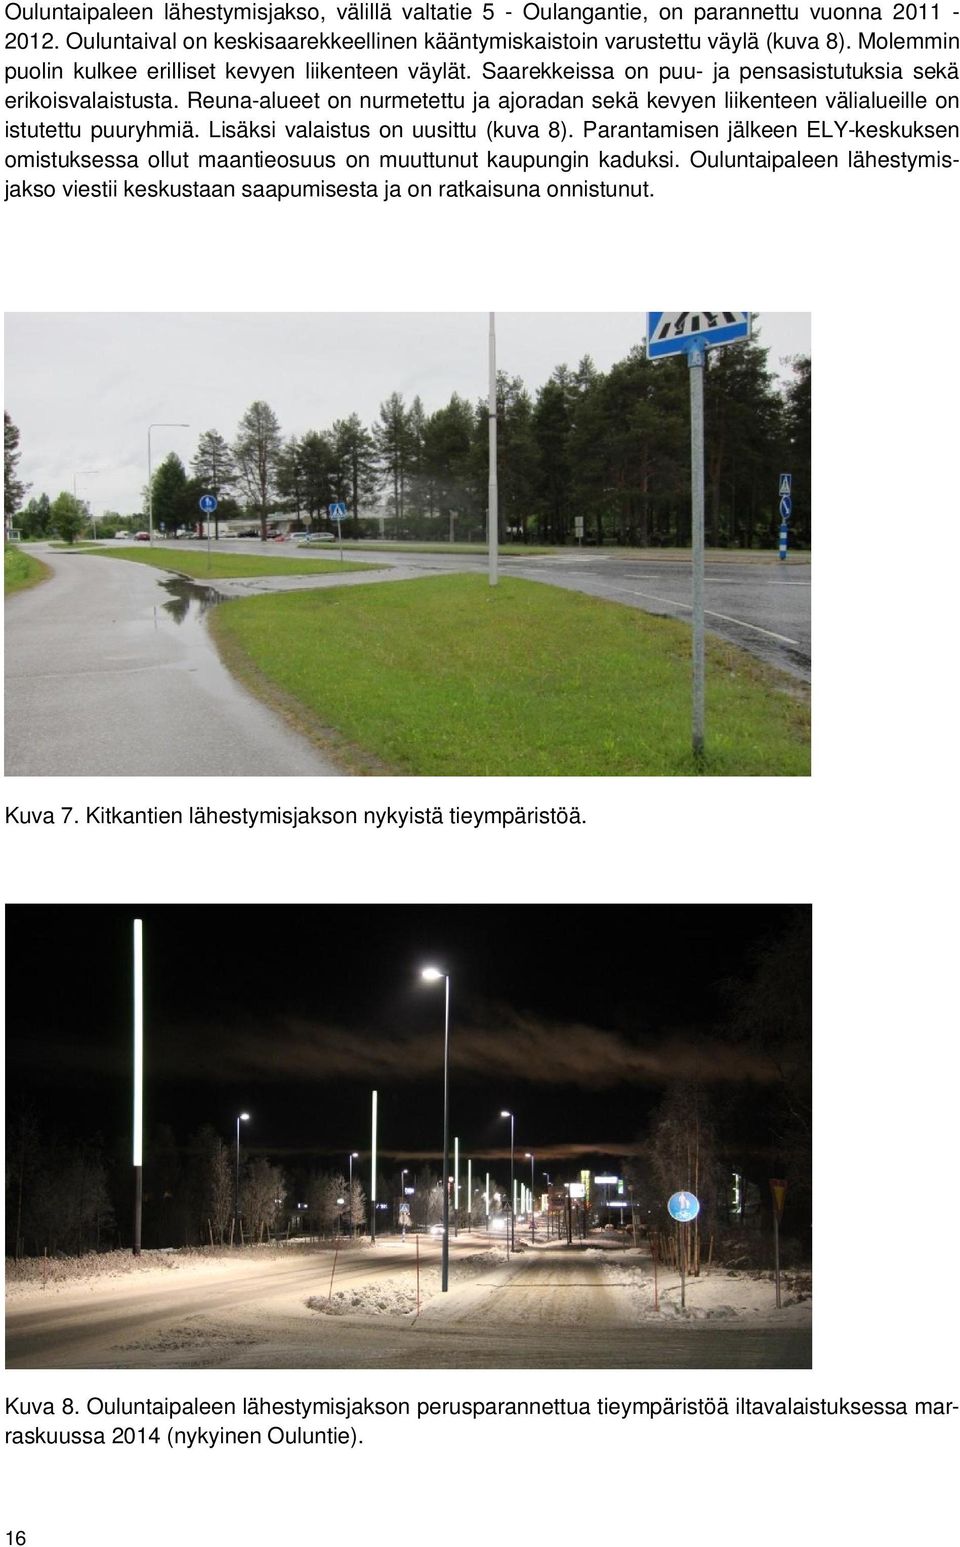 Reuna-alueet on nurmetettu ja ajoradan sekä kevyen liikenteen välialueille on istutettu puuryhmiä. Lisäksi valaistus on uusittu (kuva 8).